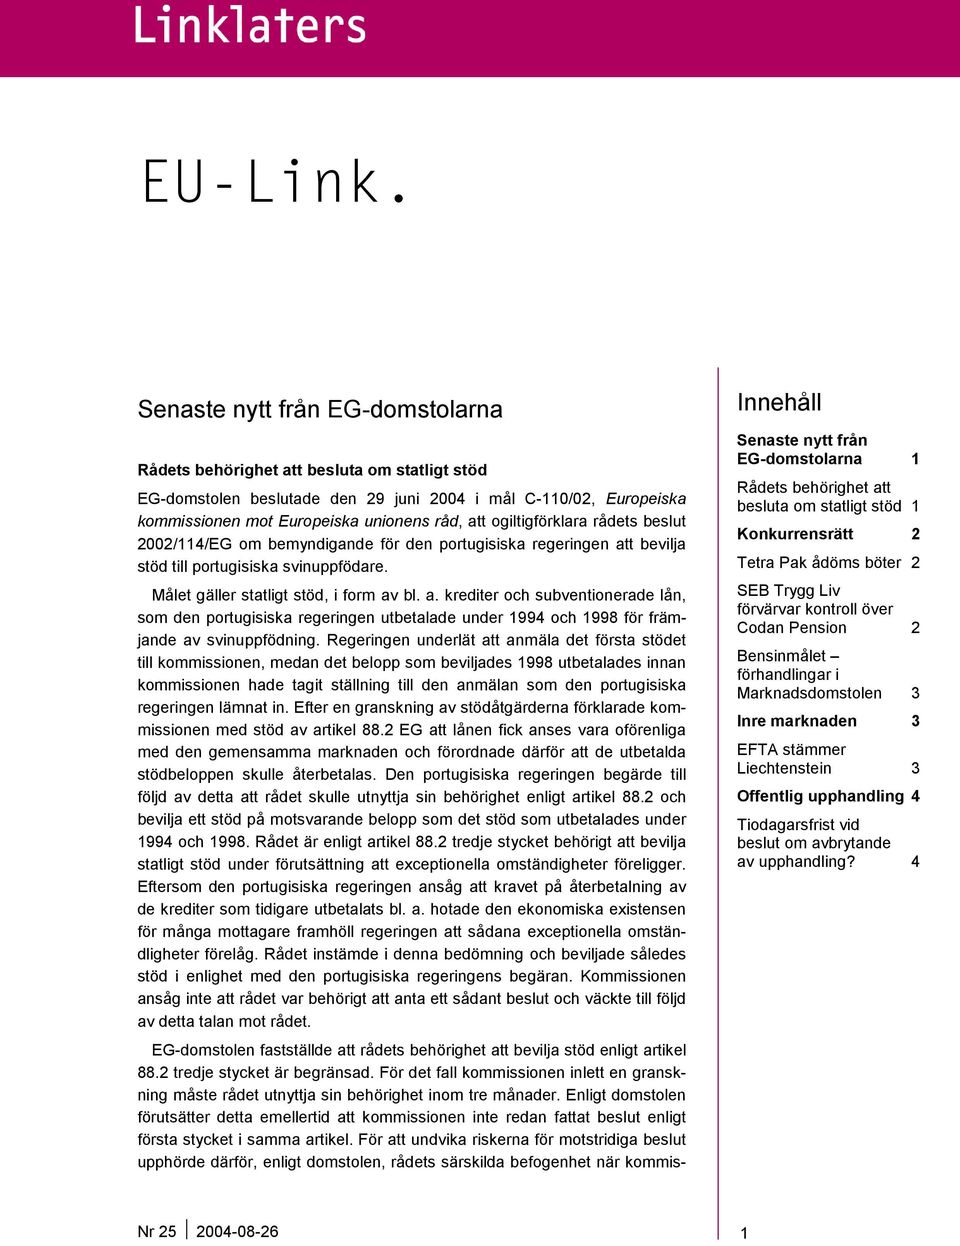 ogiltigförklara rådets beslut 2002/114/EG om bemyndigande för den portugisiska regeringen at